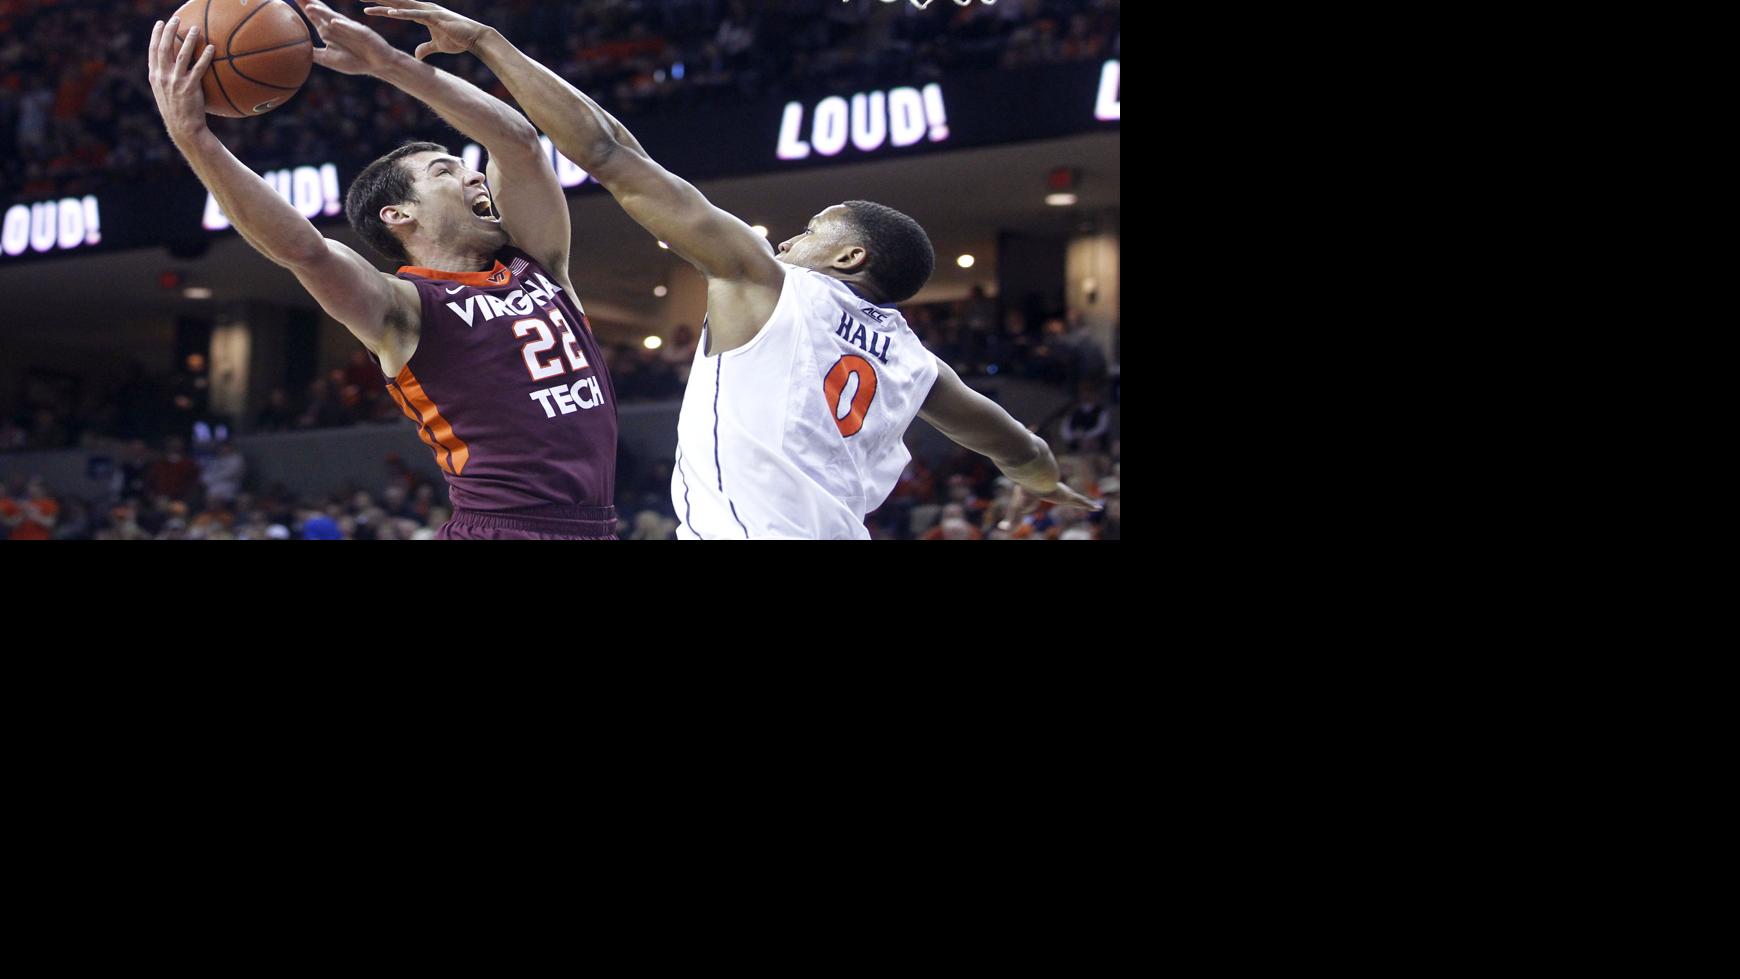 UVa vs. Virginia Tech basketball photos Local News